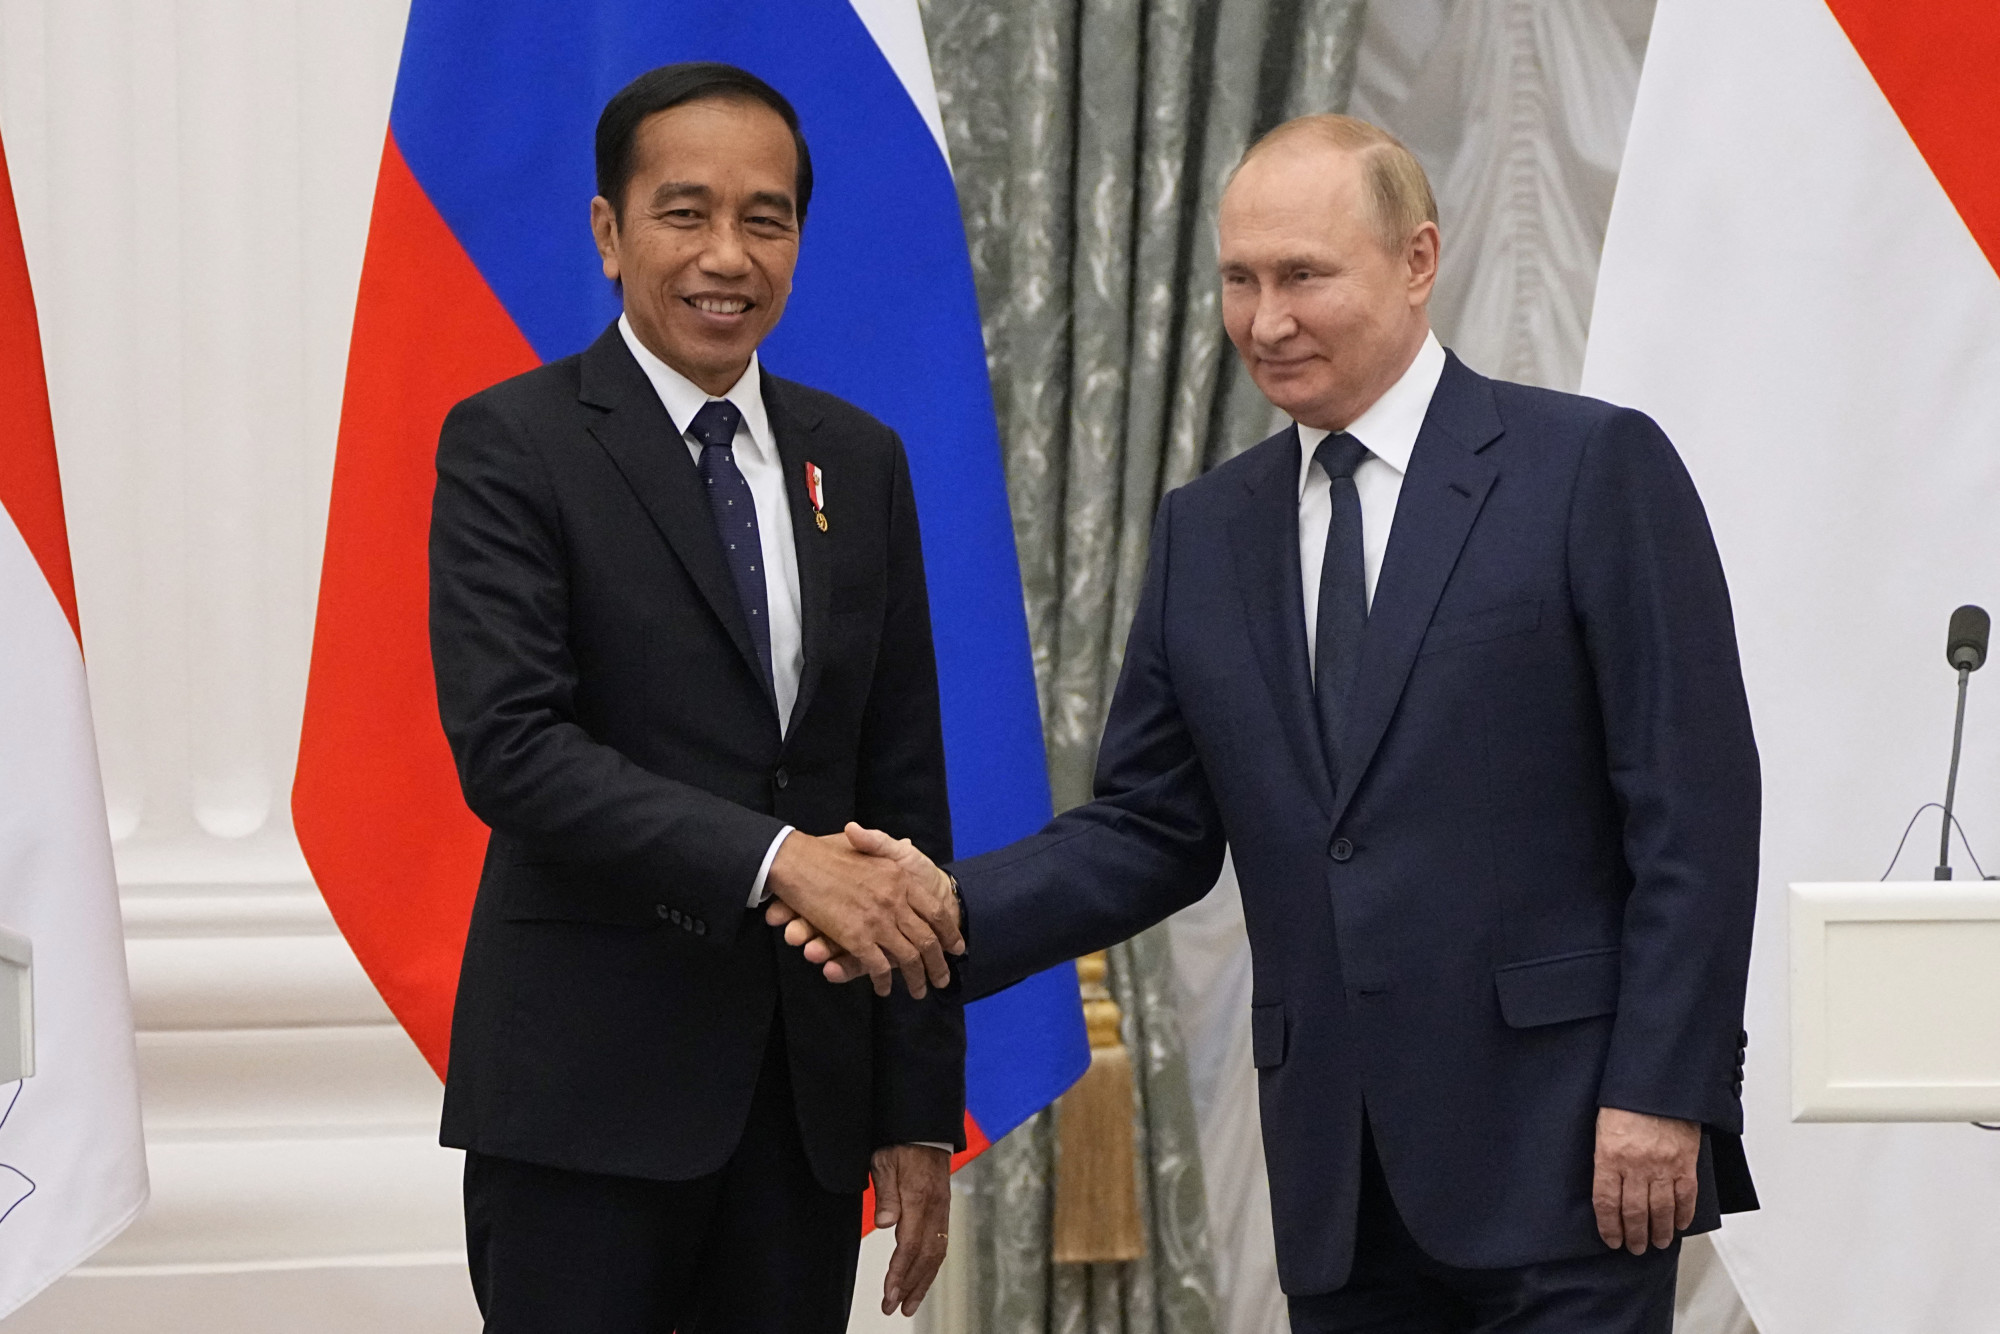 Az indonéz elnök személyesen vitte el Putyinnak Zelenszkij üzenetét